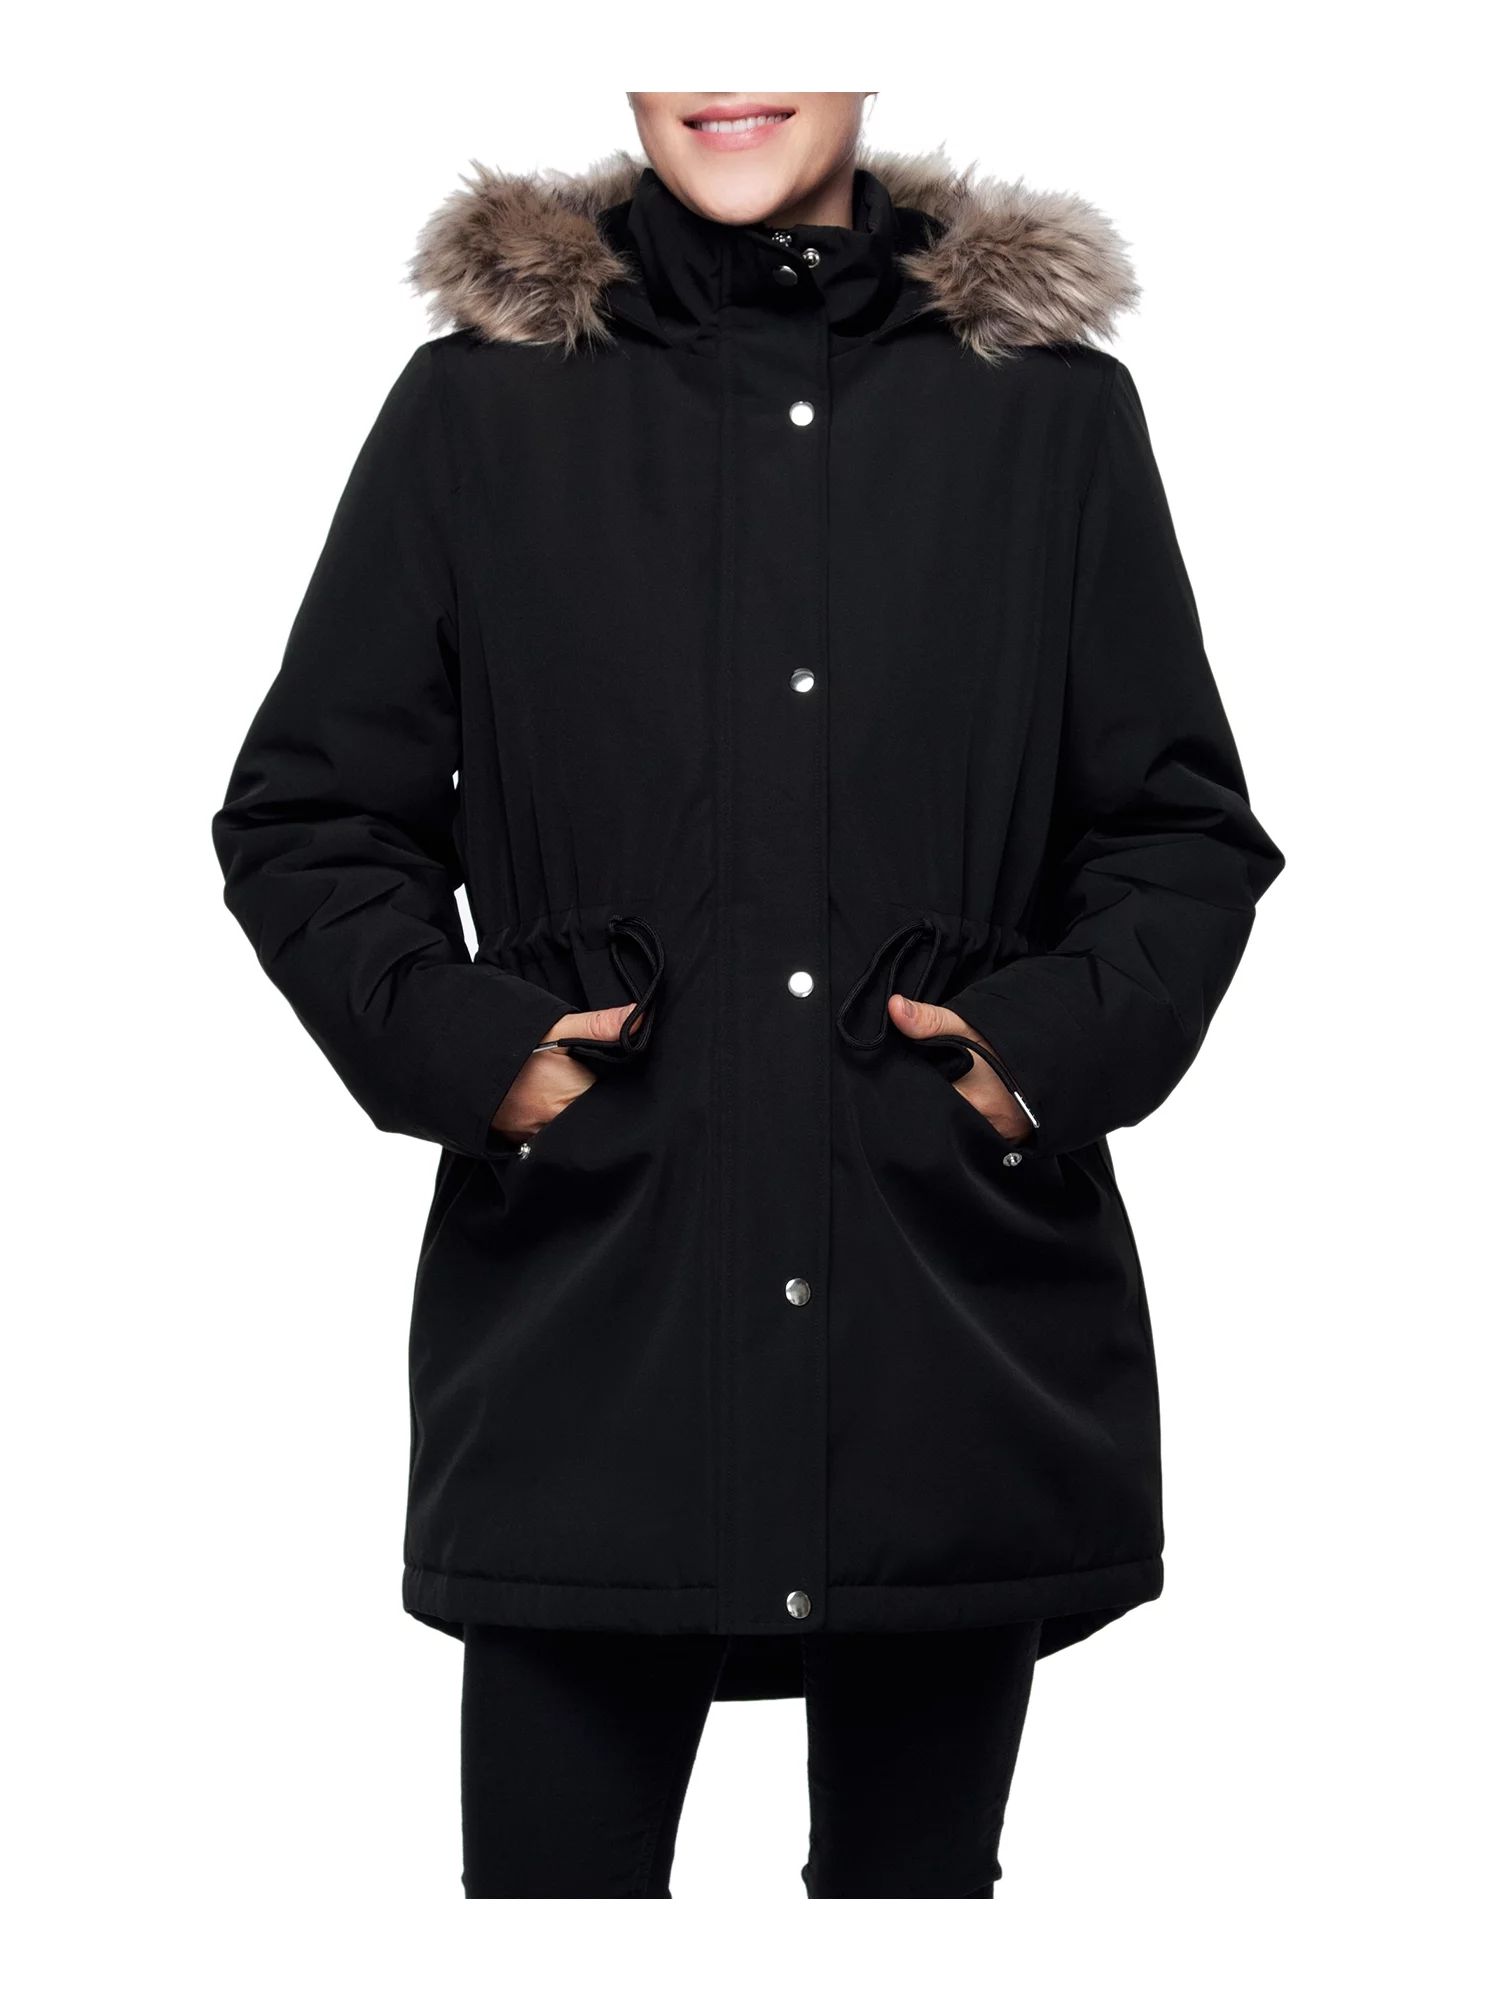 Rokka&Rolla Women's Mini Fur Lined Winter Coat with Faux Fur Hood Parka Jacket (Exclusive on Walm... | Walmart (US)